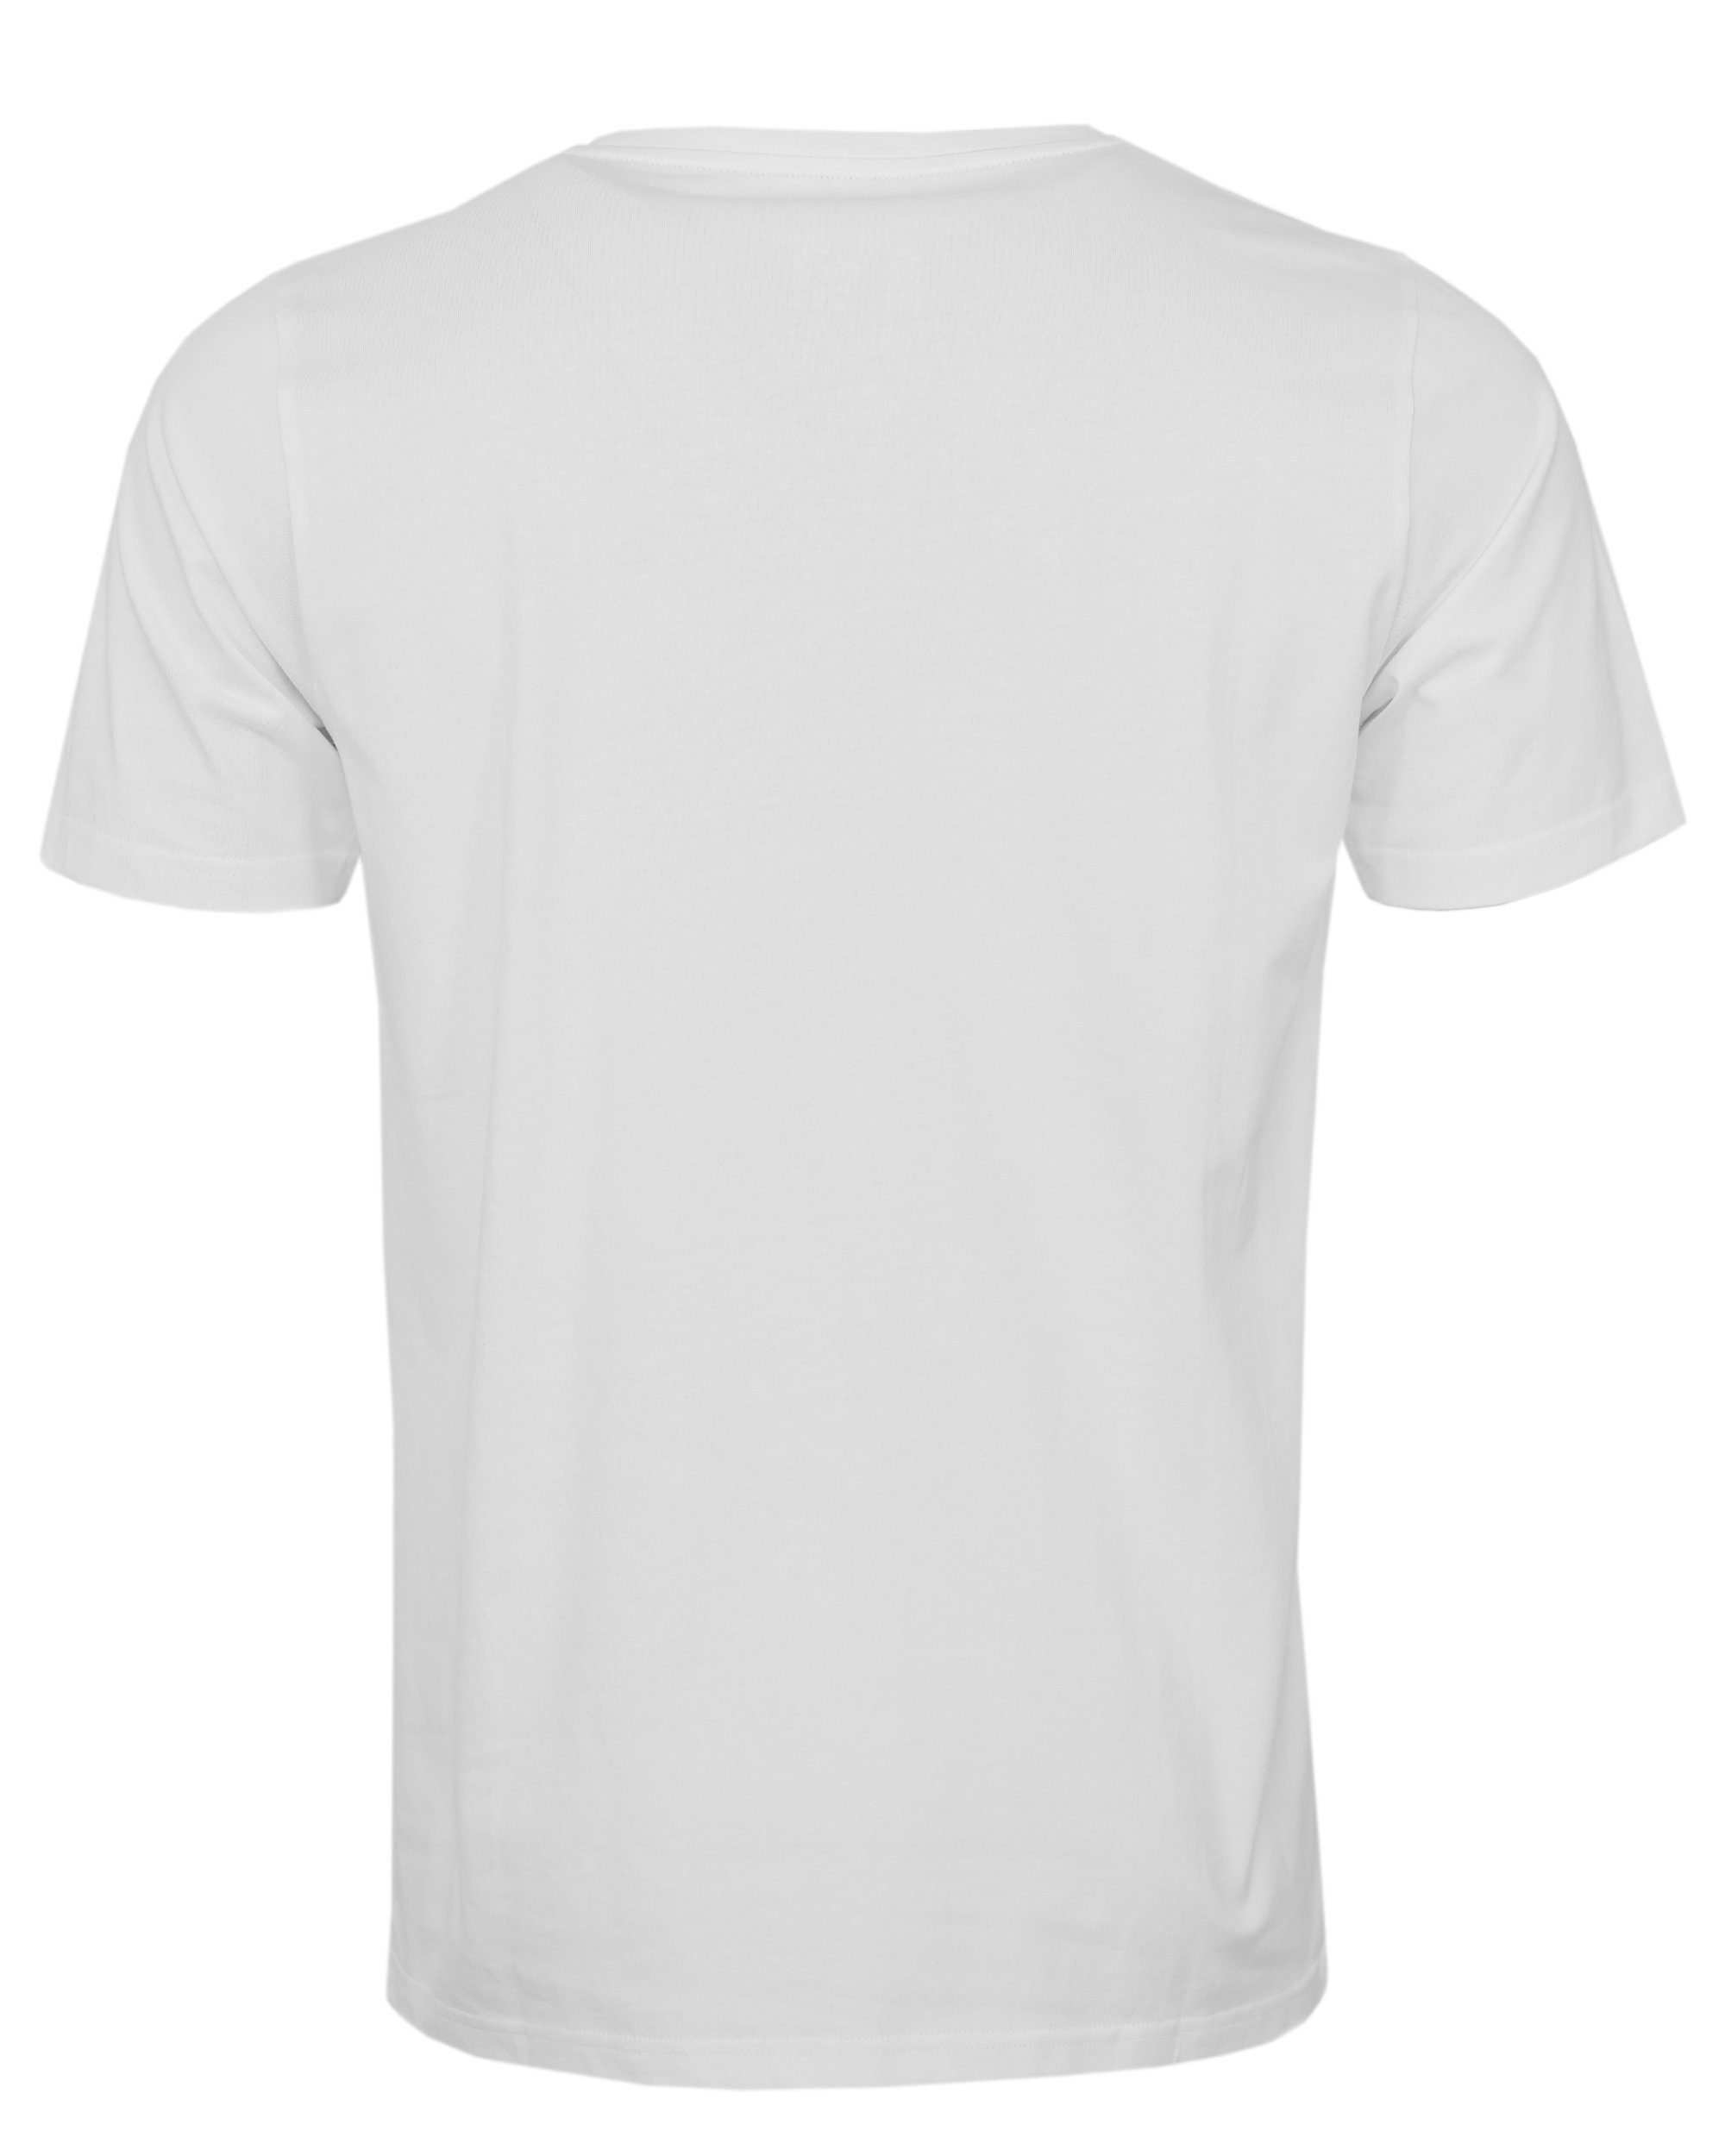 NASSAU BEACH T-Shirt NB22014